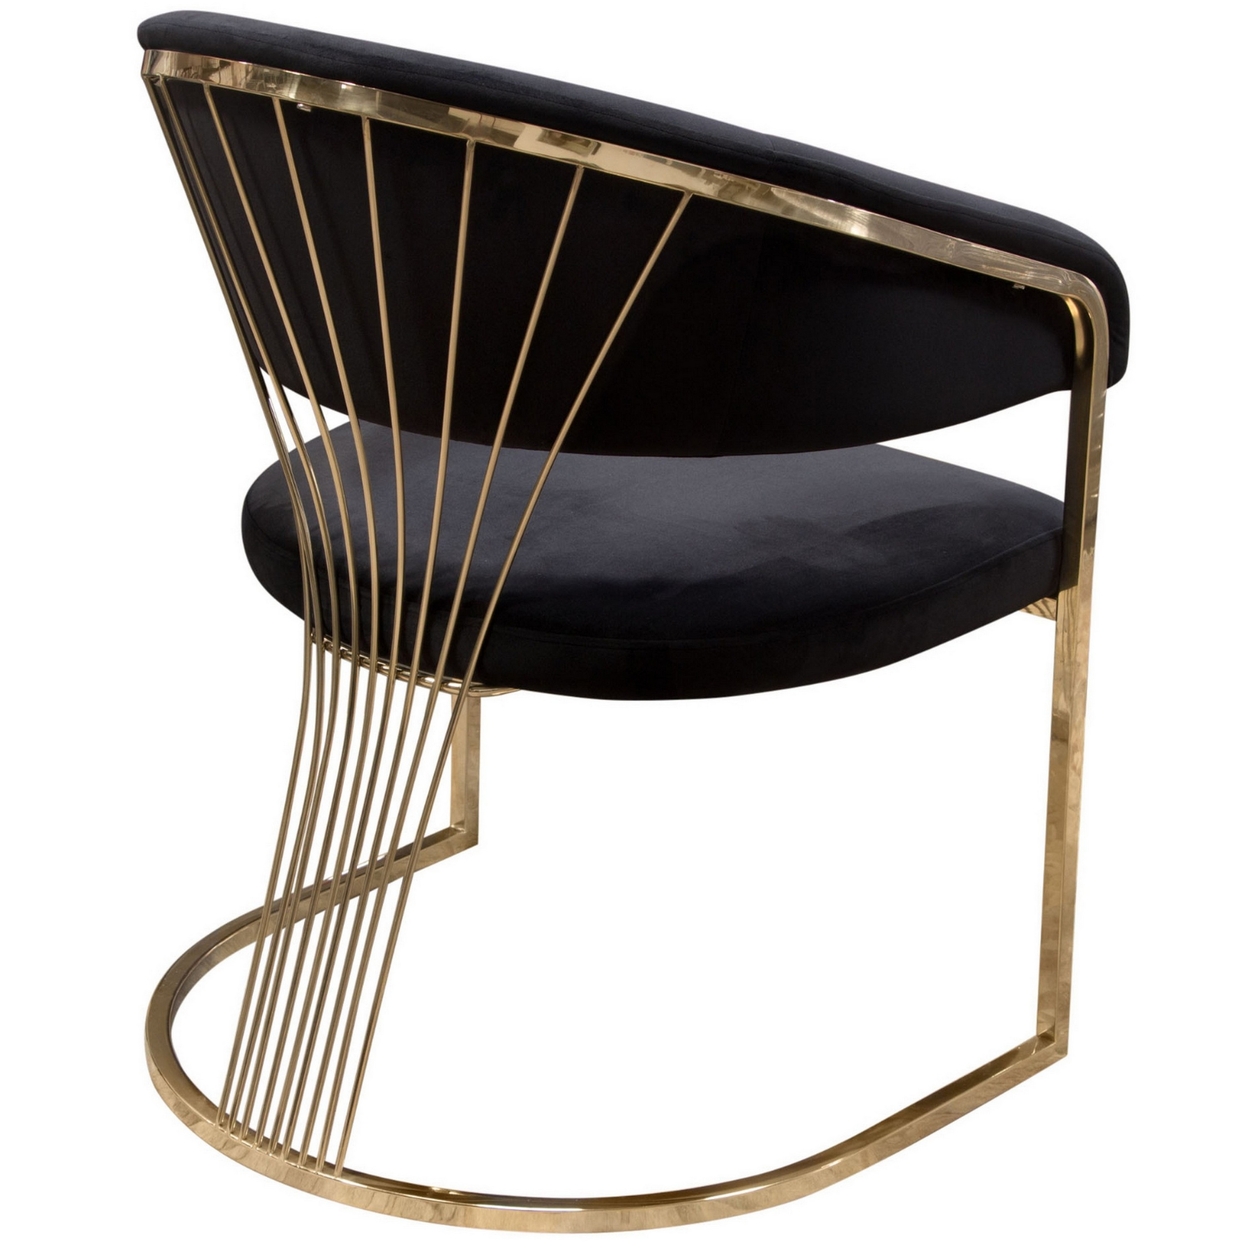 Emy 26 Inch Cantilever Barrel Dining Chair, Black Velvet Upholstery, Gold- Saltoro Sherpi